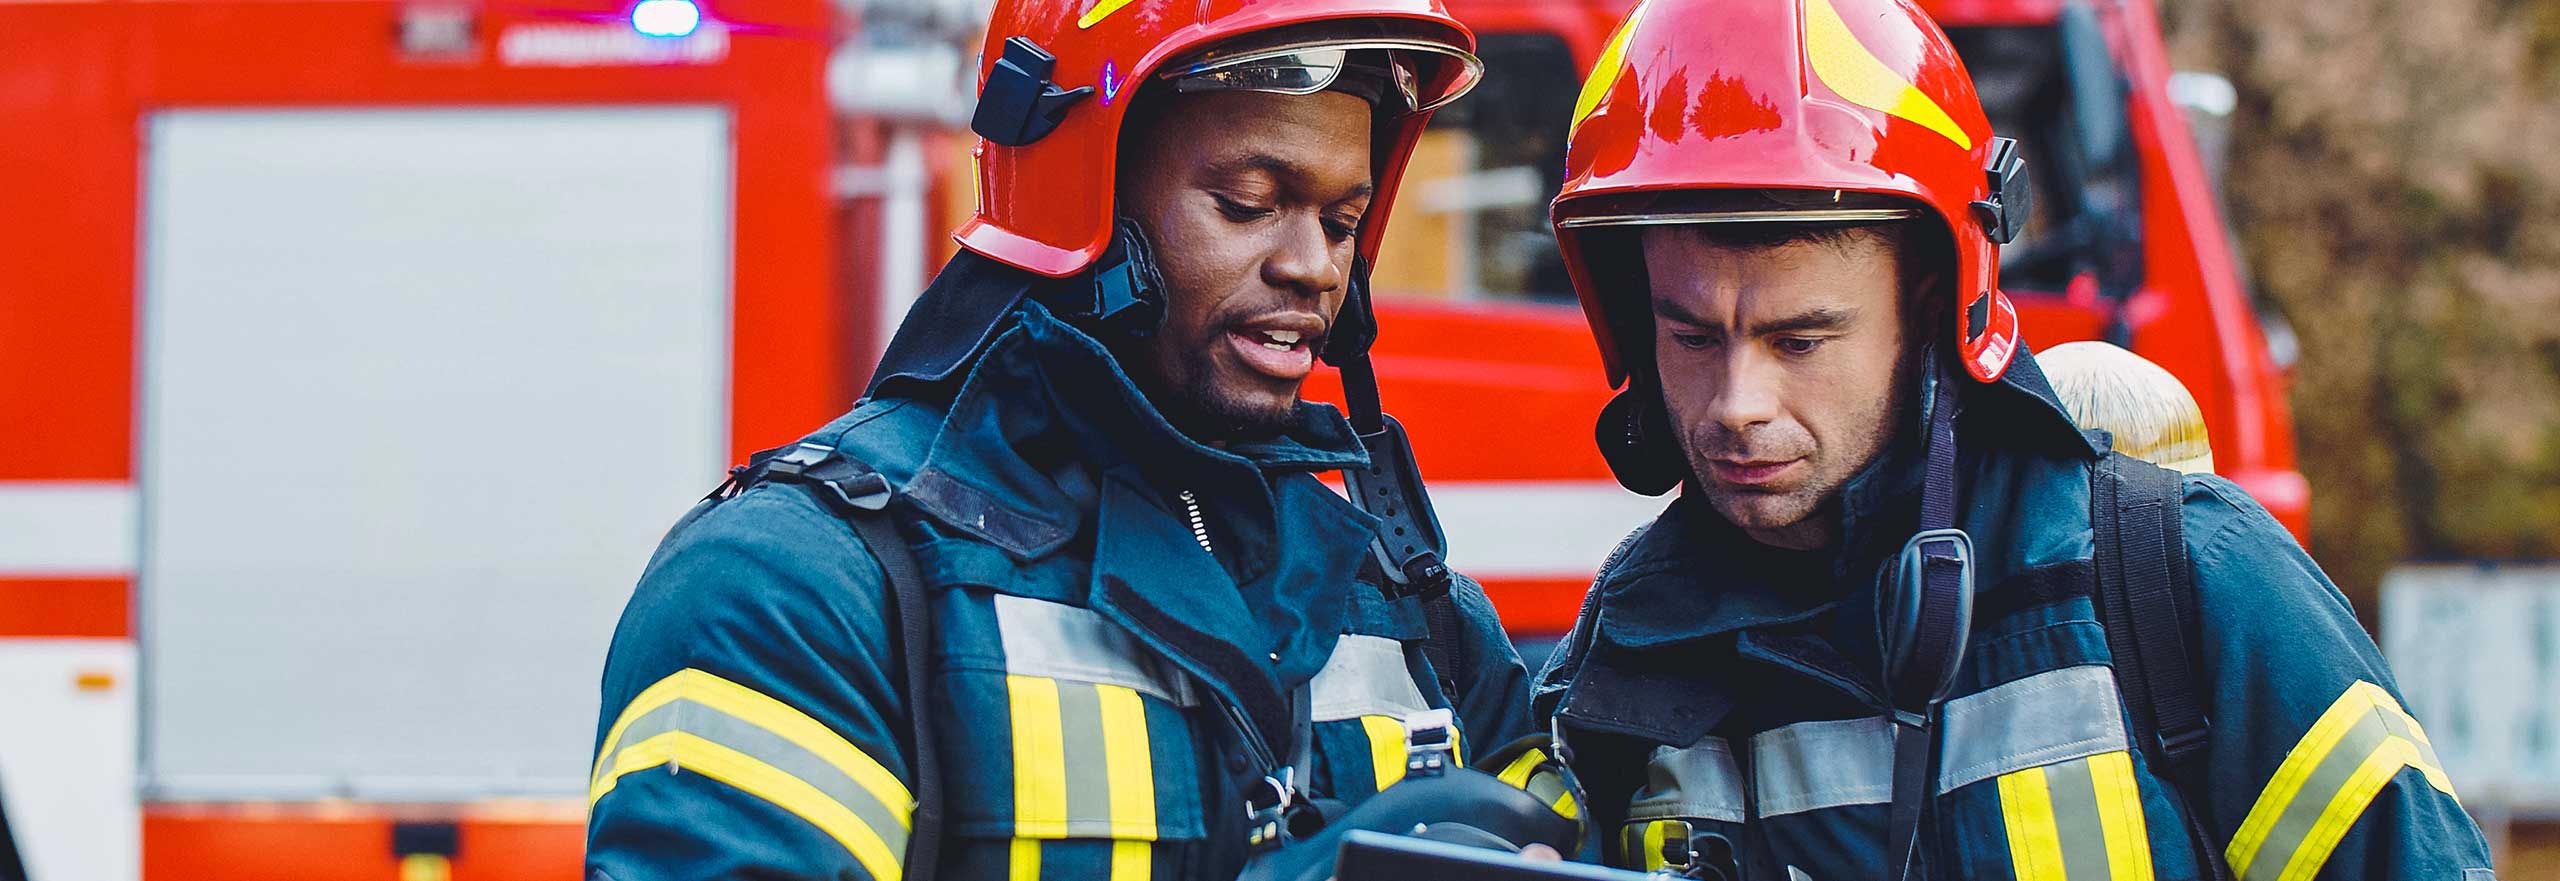 Retrato de dois bombeiros em operação de combate a incêndio, bombeiro com roupas de proteção e capacete utilizando um tablet em ação de combate.